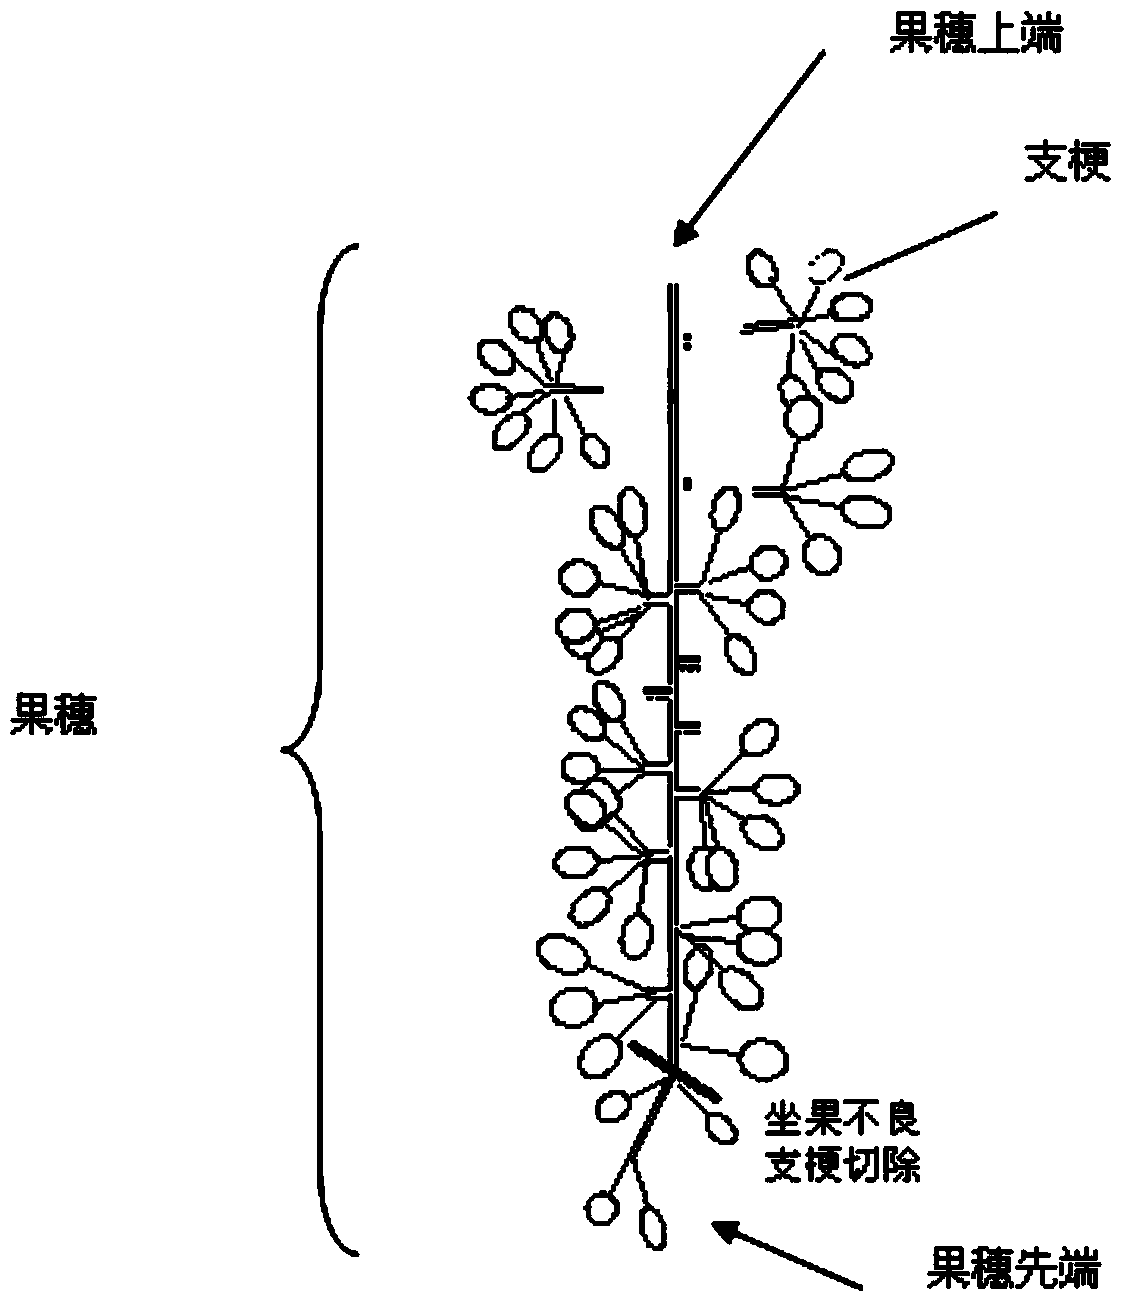 Sunrose grape flower/ fruit cluster pruning method